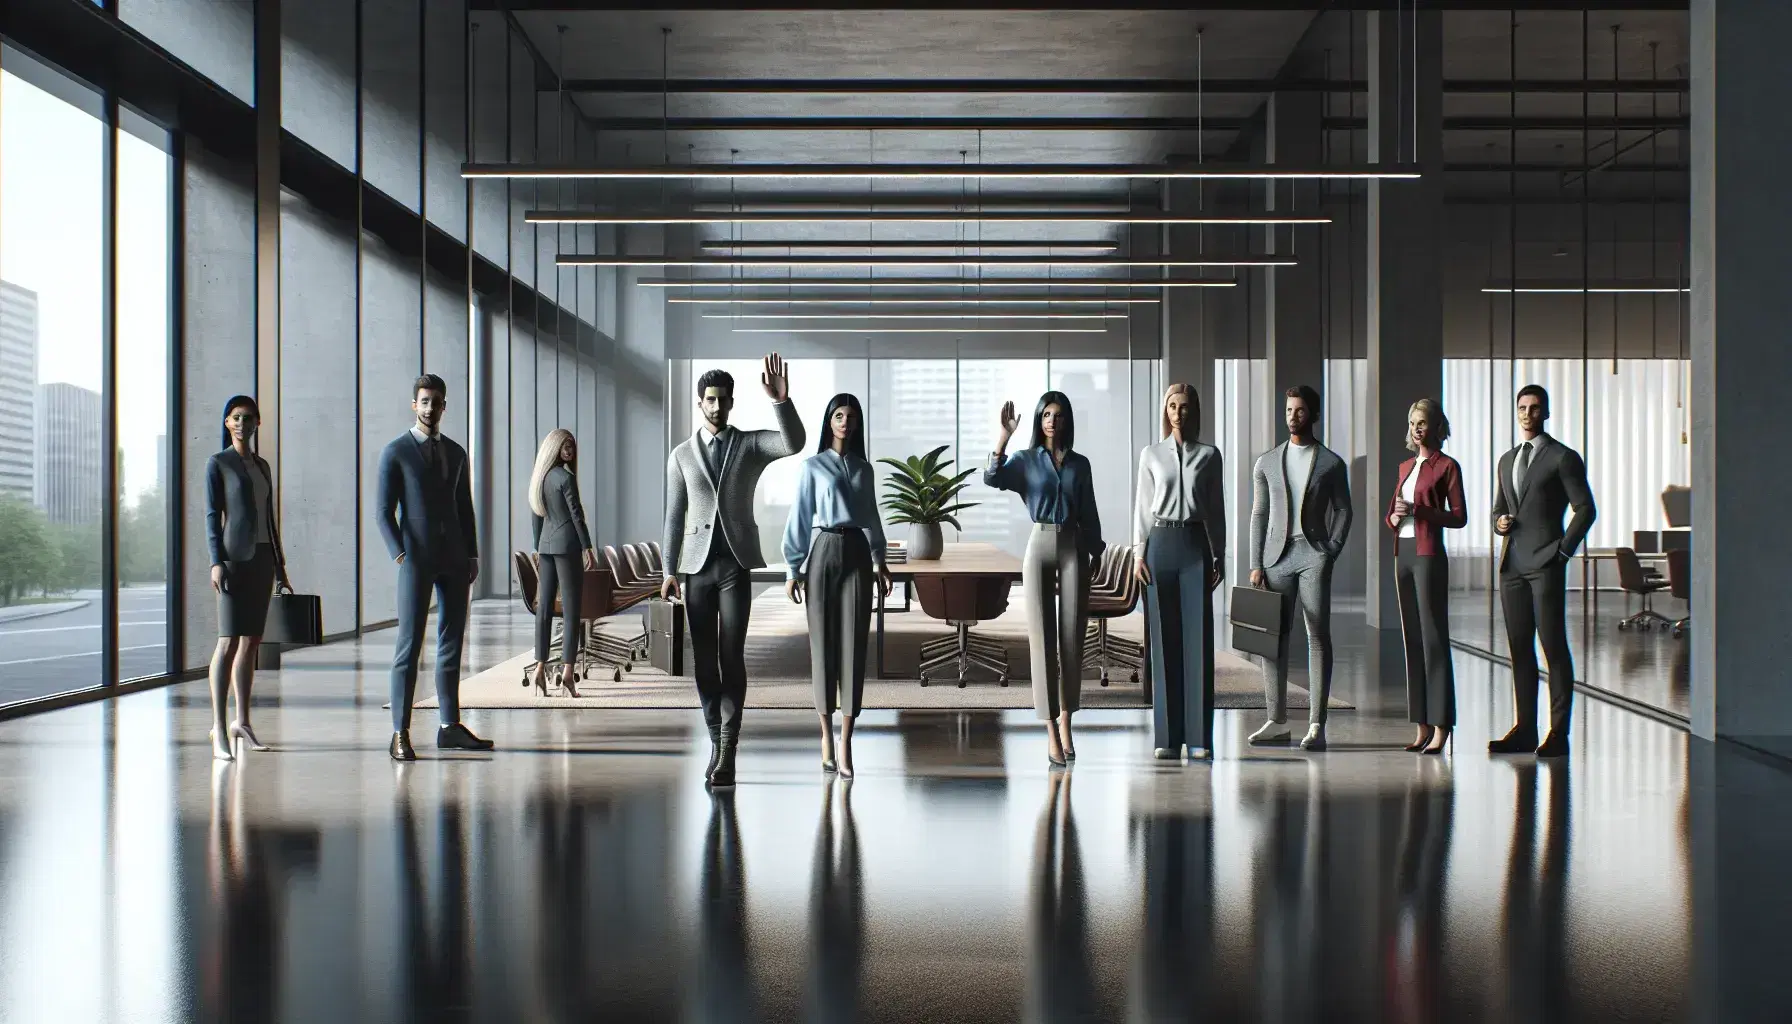 Grupo diverso de profesionales en oficina moderna con mujer saludando, hombres y mujeres en traje, sala de reuniones al fondo y planta verde.